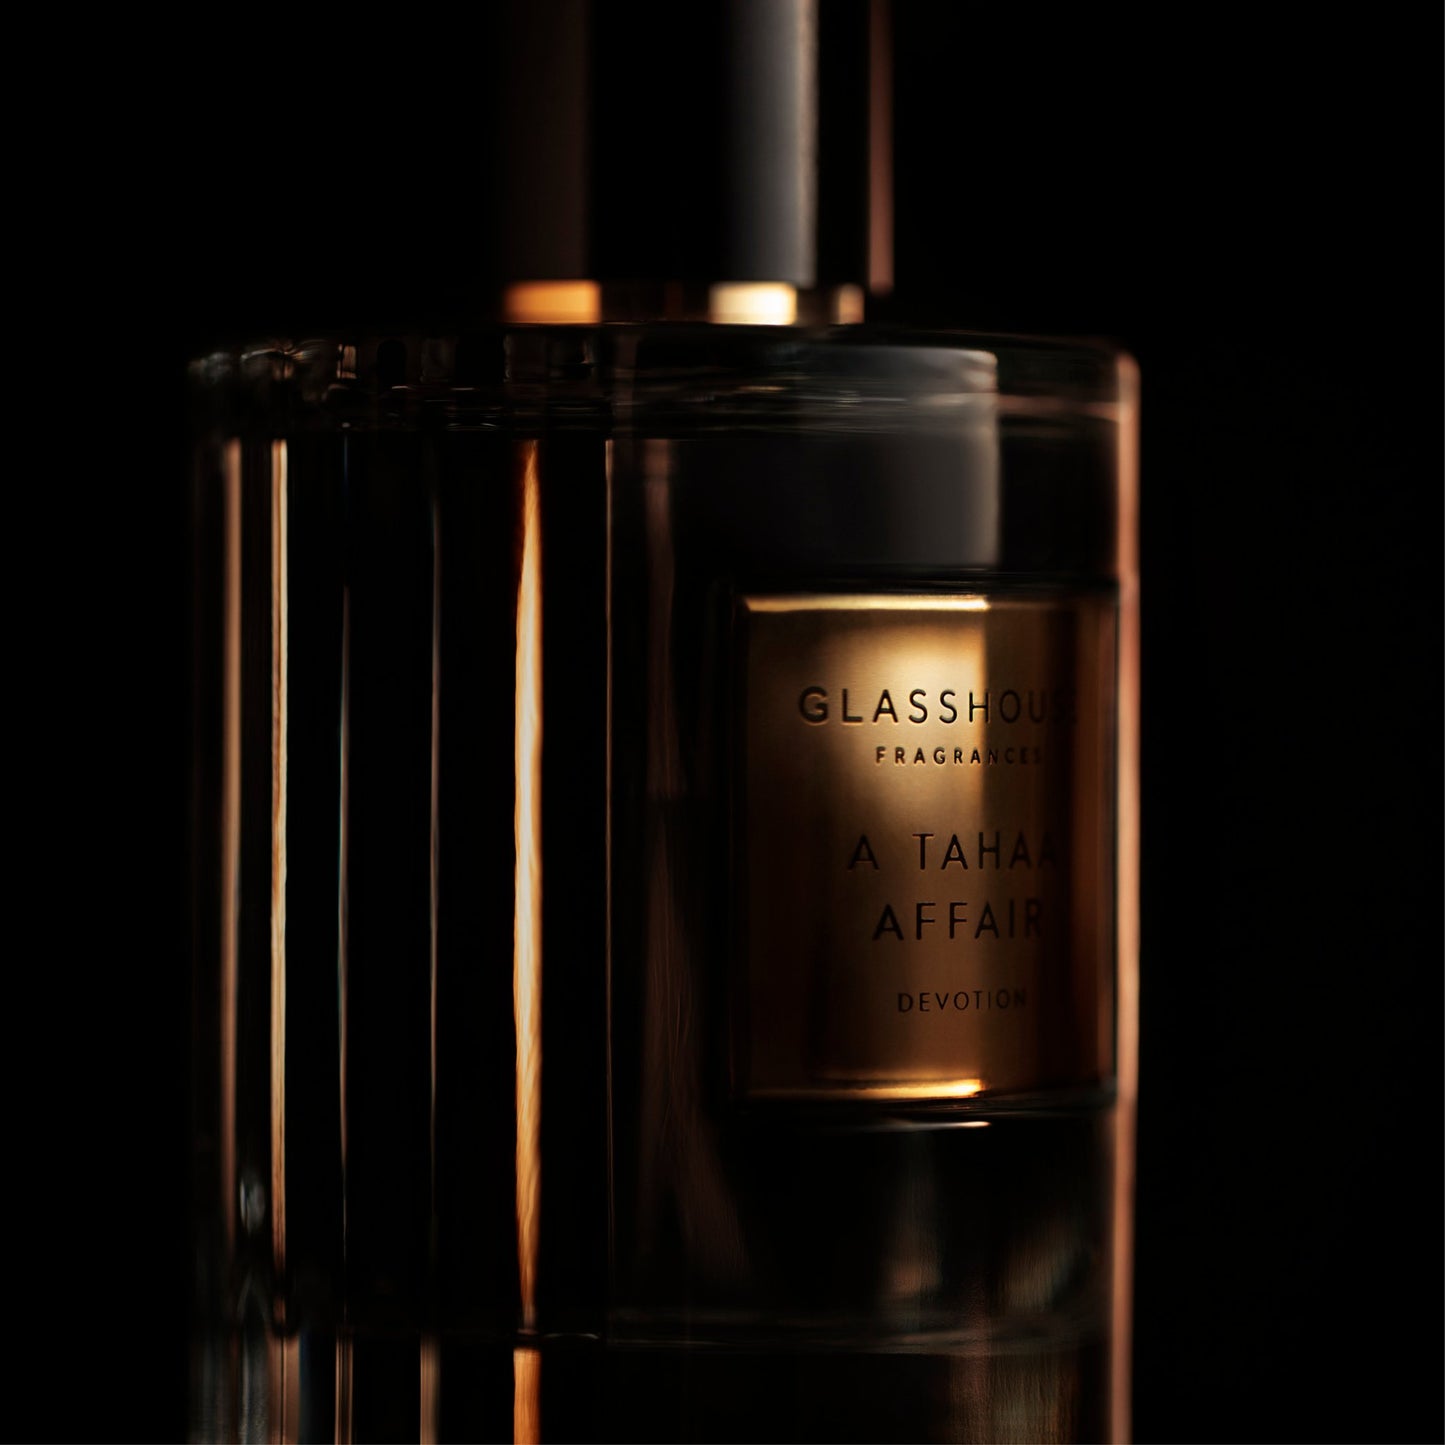 A Tahaa Affair Devotion 100ml Eau De Parfum - Glasshouse Fragrances